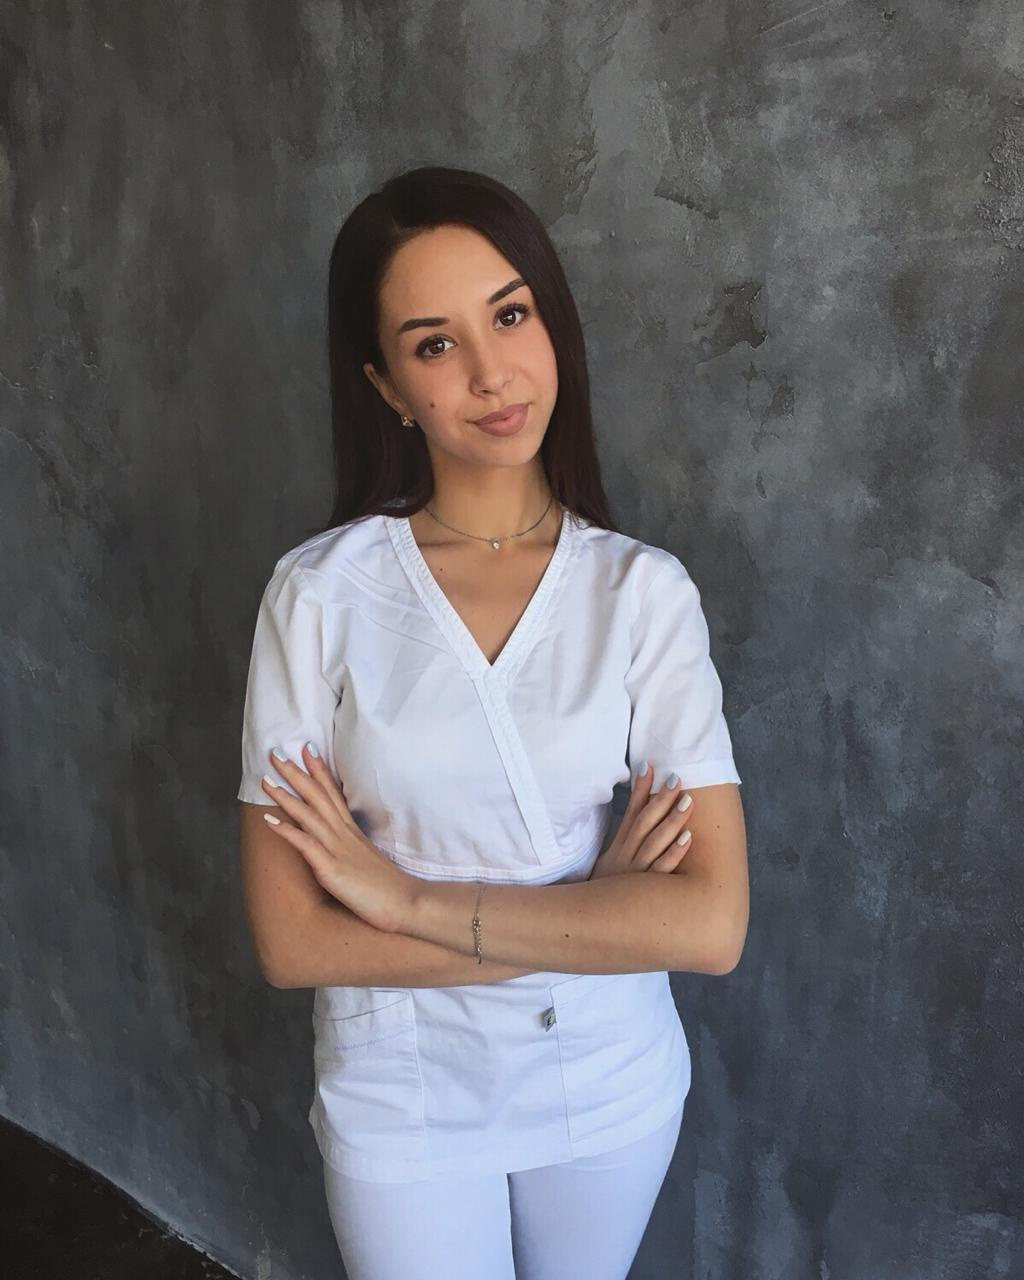 Екатерина Ромашова работает в 24-й больнице врачом кардиологического отделения и мечтает поступить в ординатуру